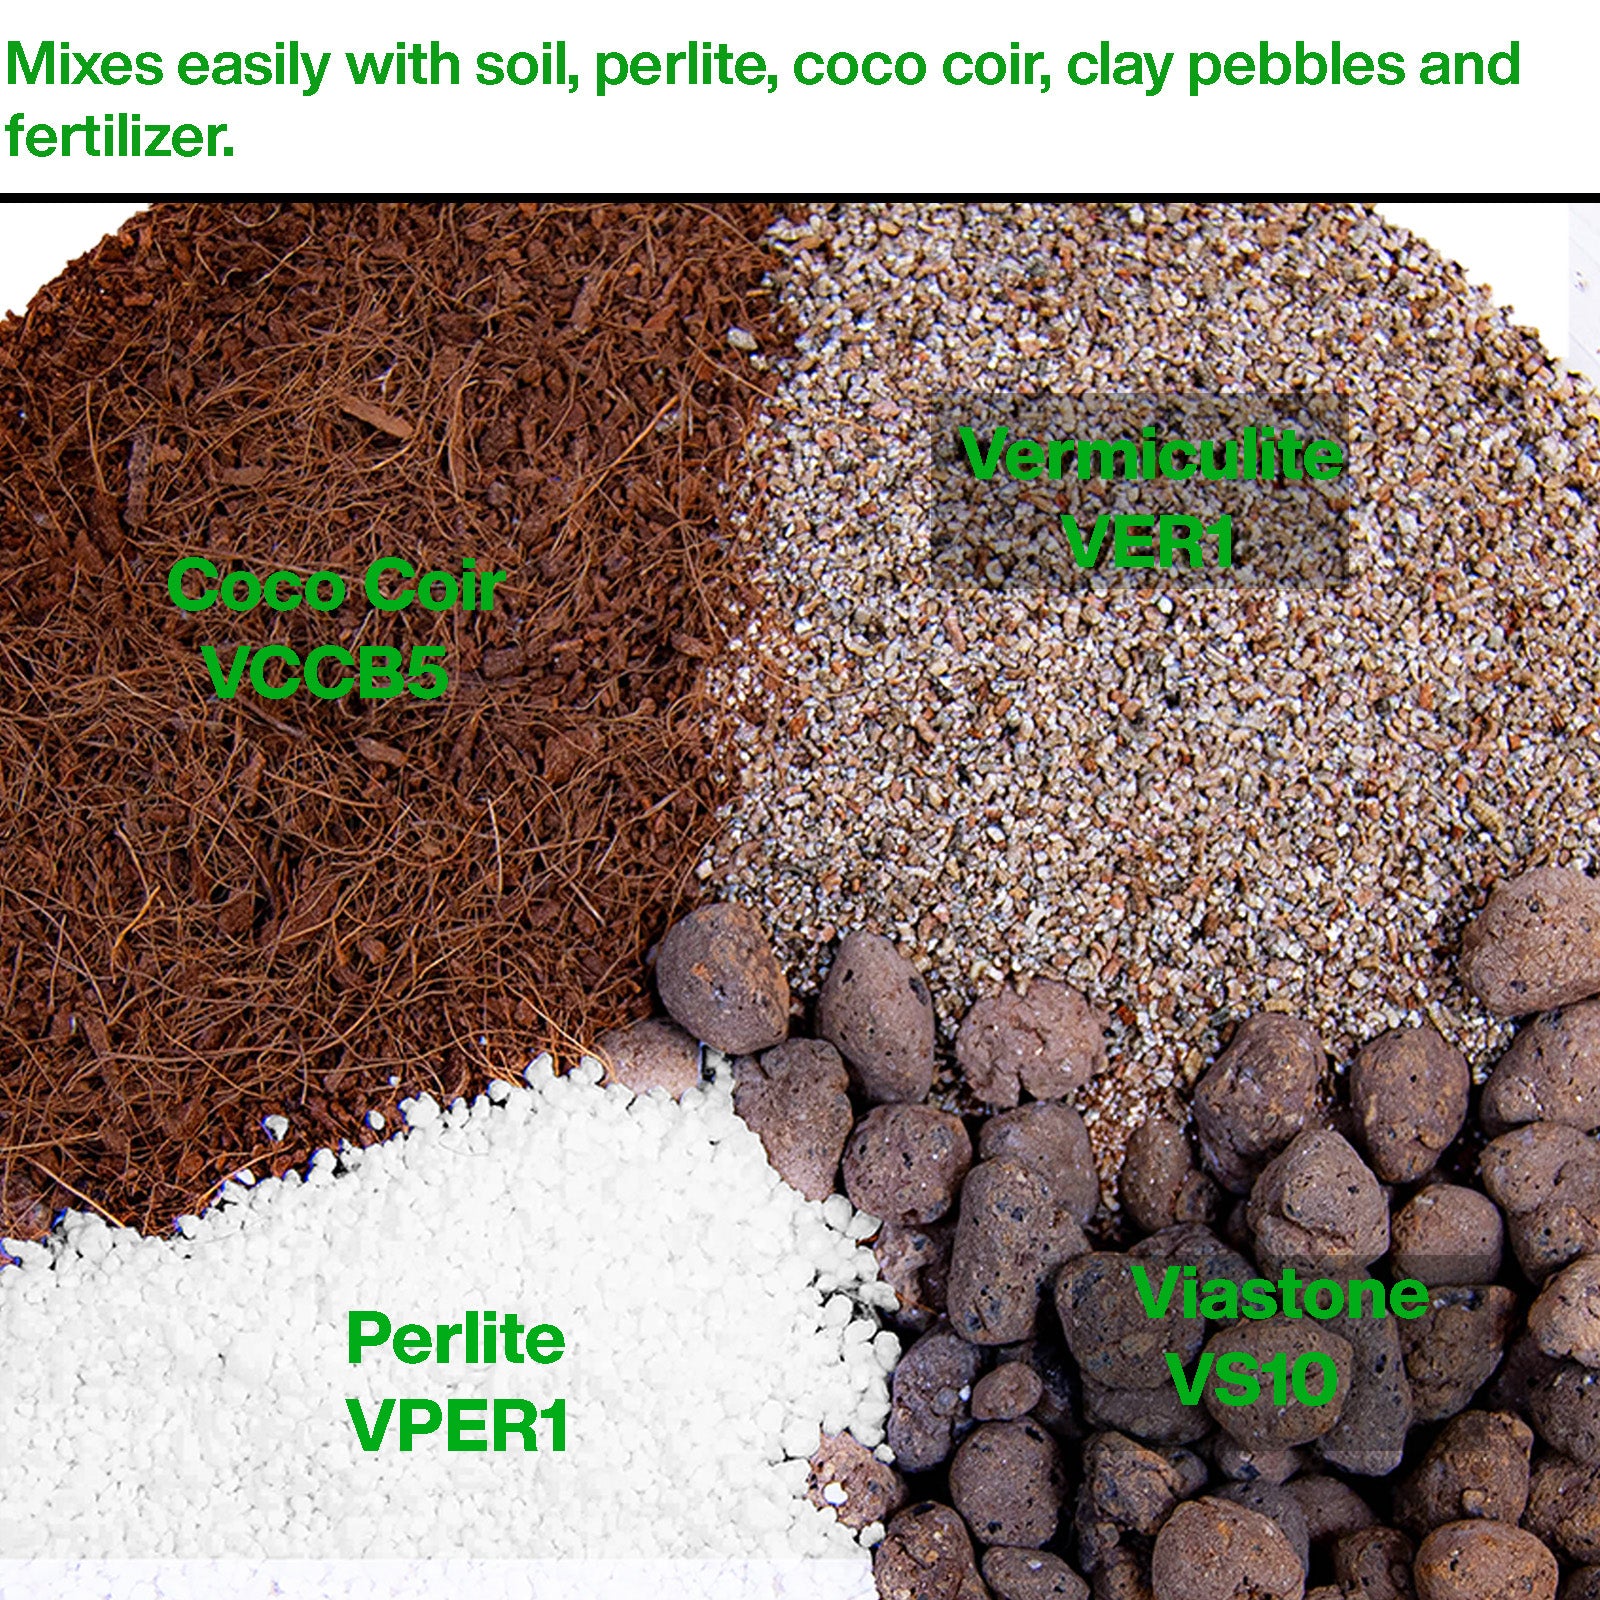 Vermiculite horticole Viagrow, 29,9 pintes / 1 pi cube / 7,5 gallons / 28,25 litres, palette de 80